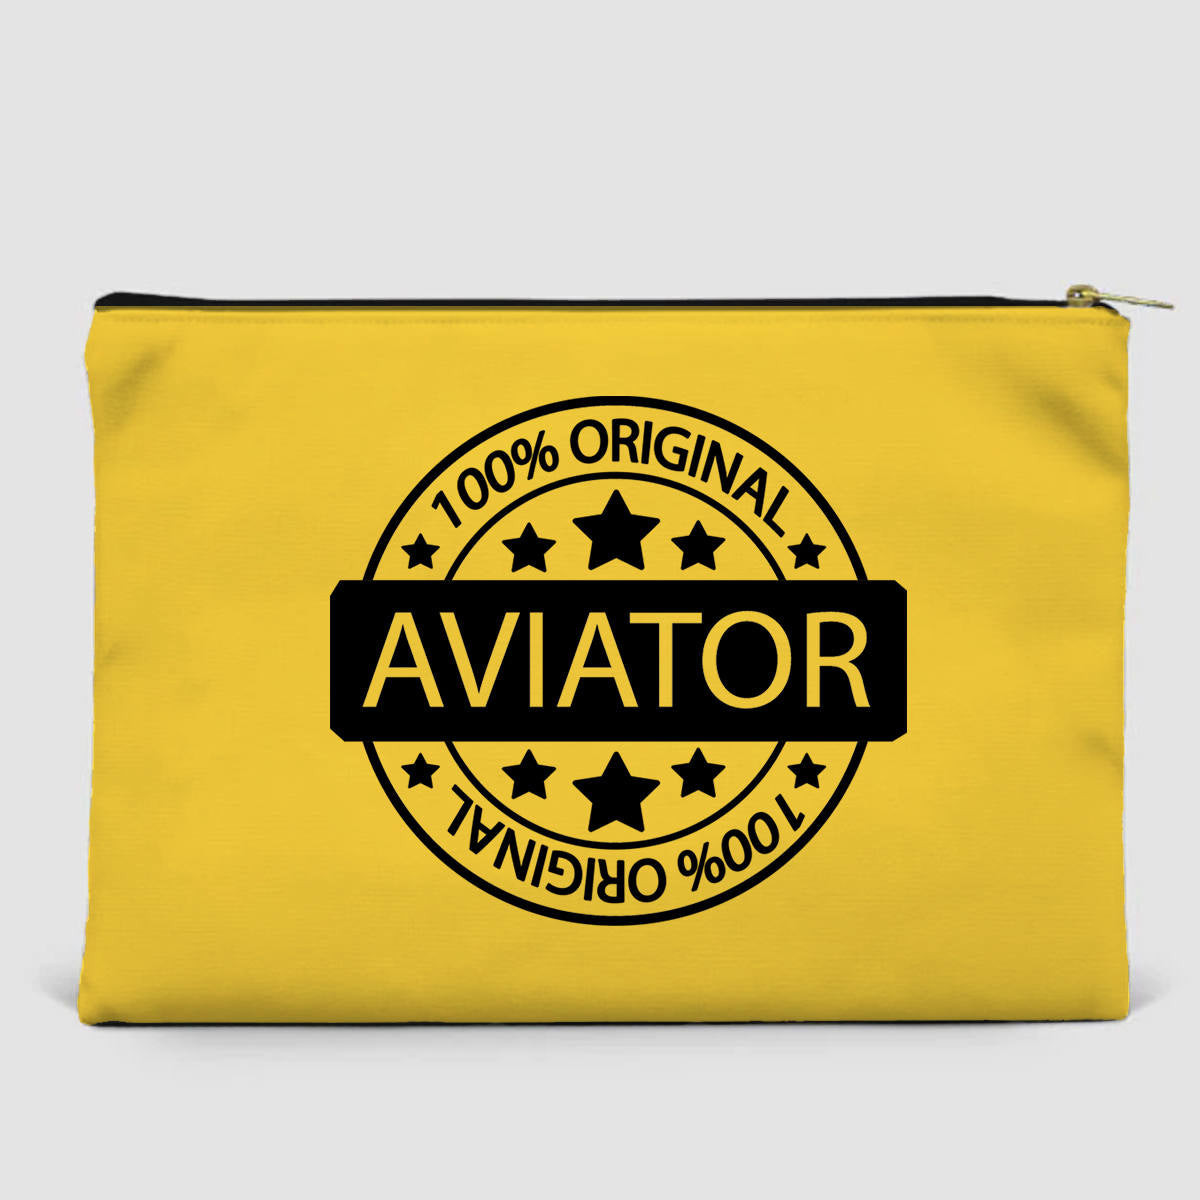 %100 Original Aviator Designed Zipper Pouch